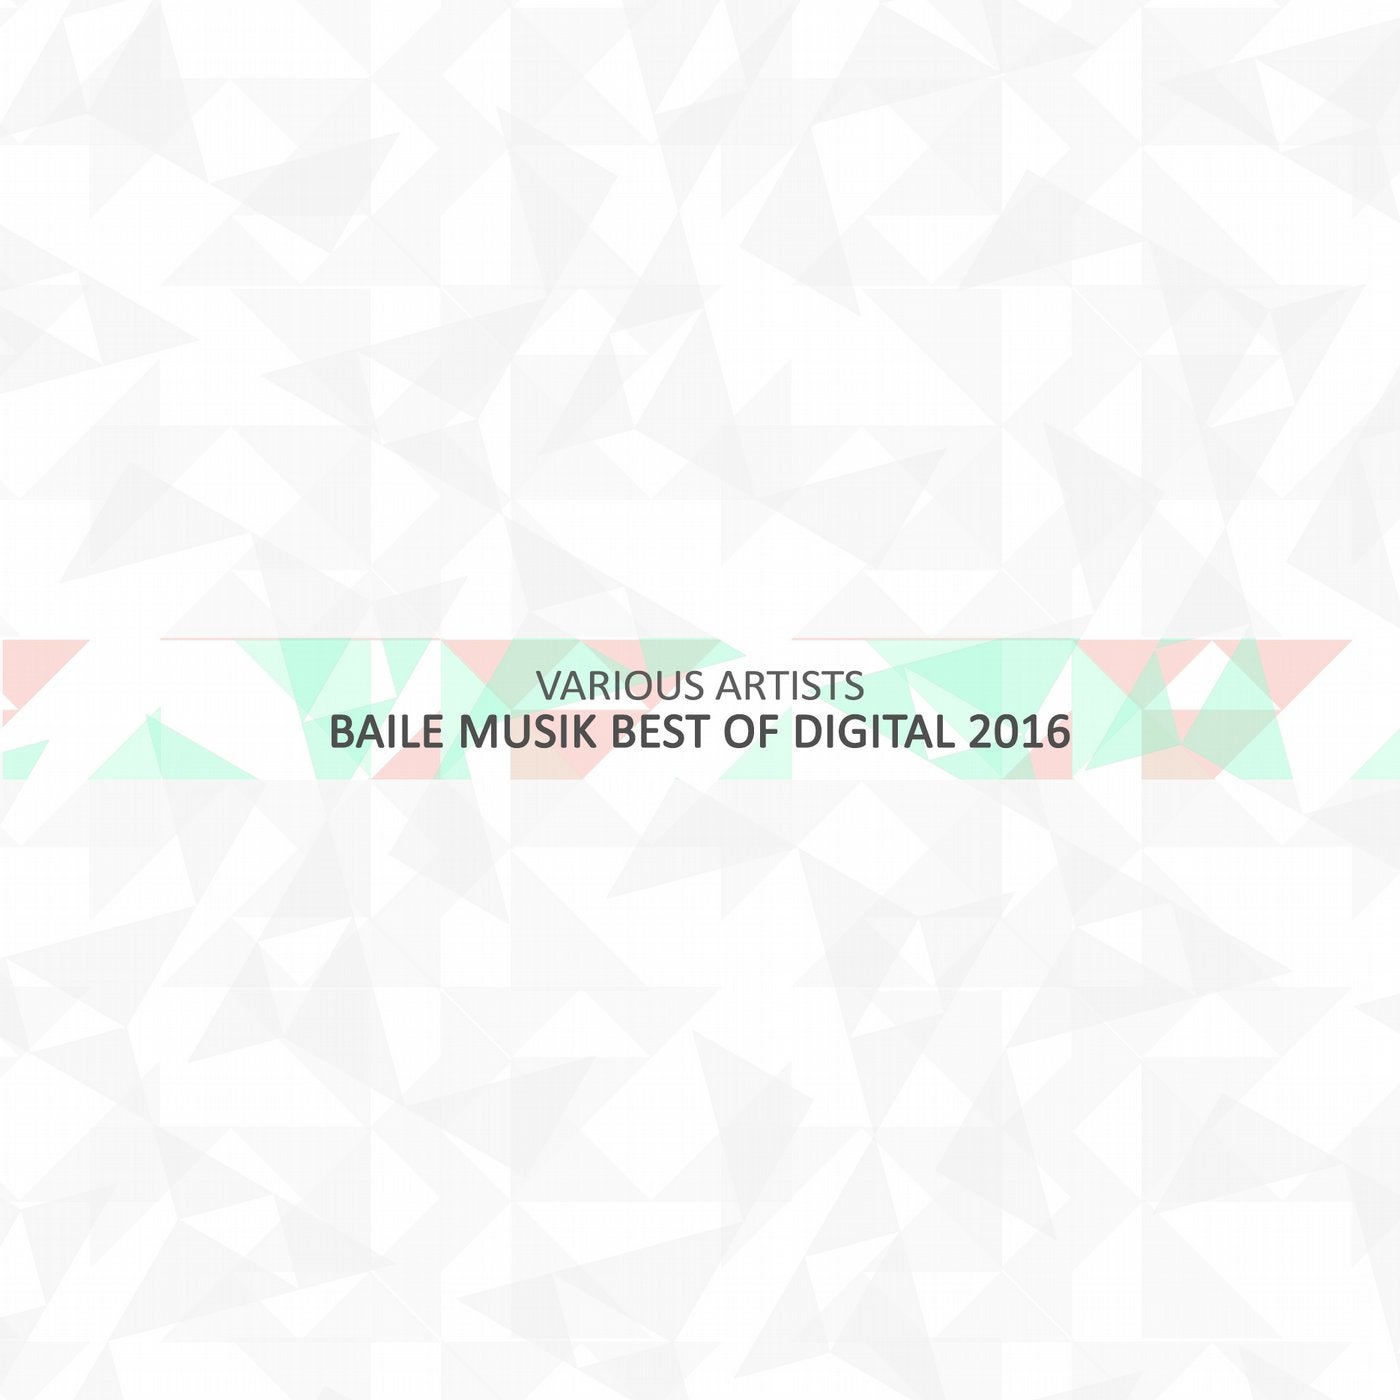 Baile Musik Best Of Digital 2016